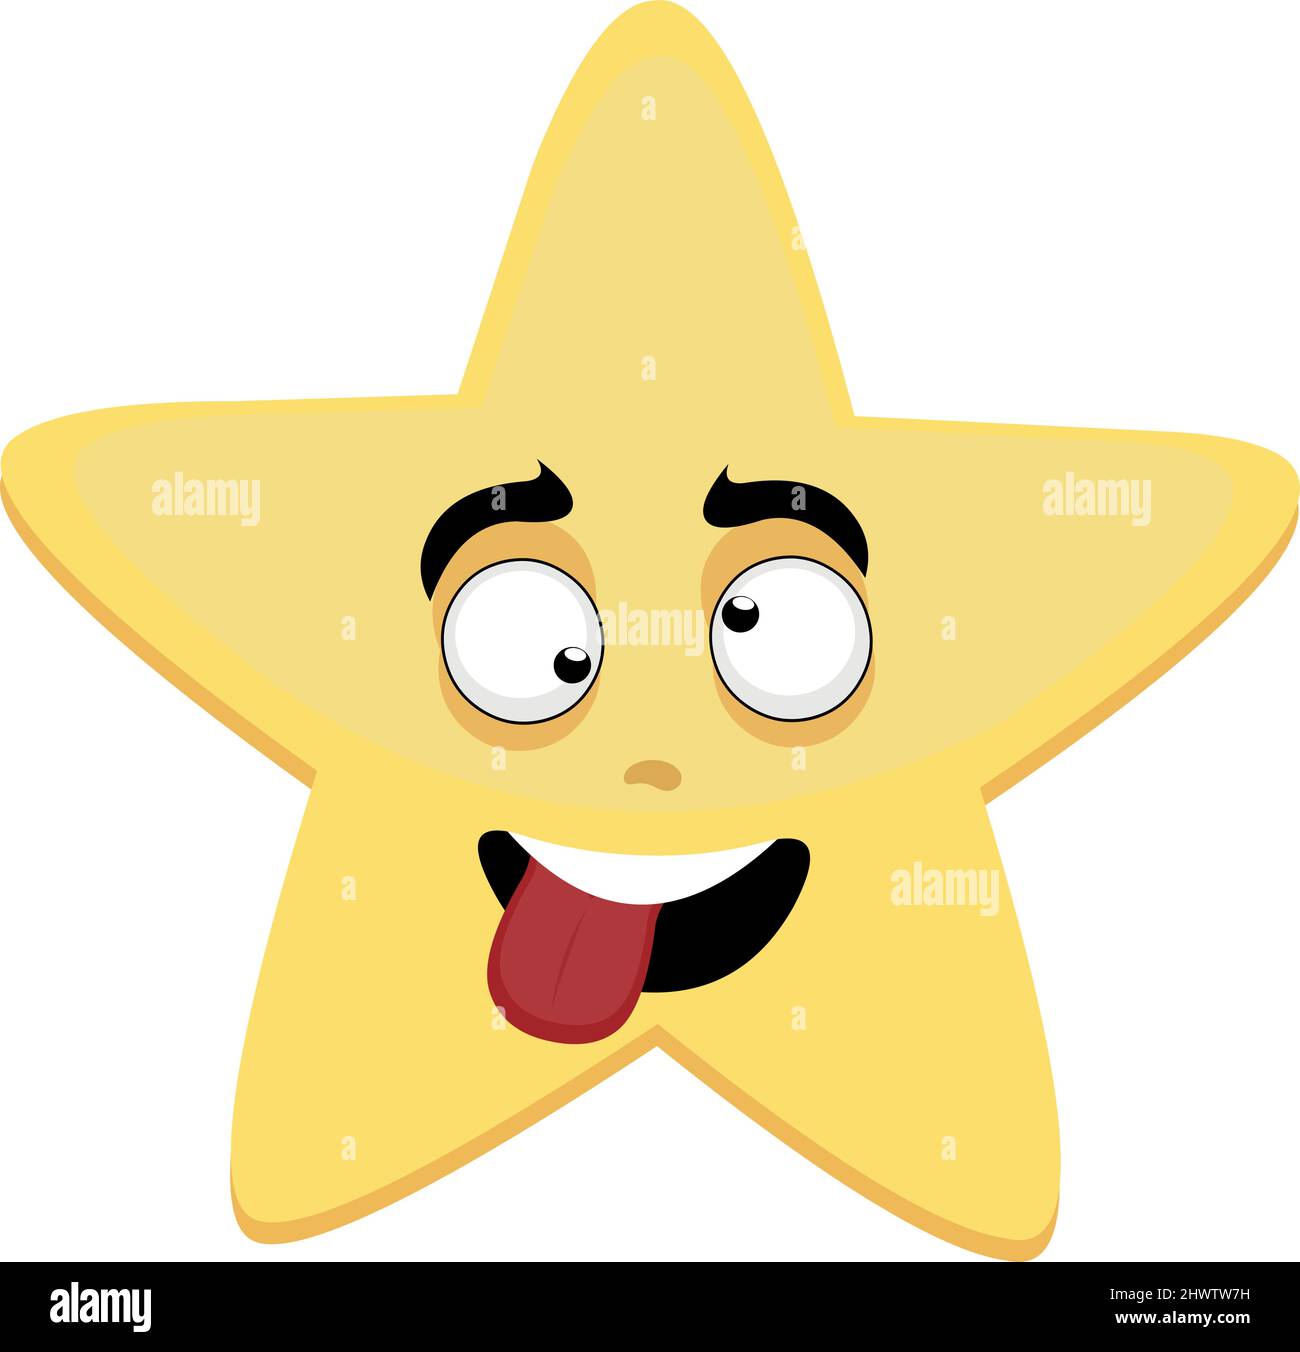 Illustrazione vettoriale di un personaggio cartoon di una stella, con un'espressione divertente e folle Illustrazione Vettoriale